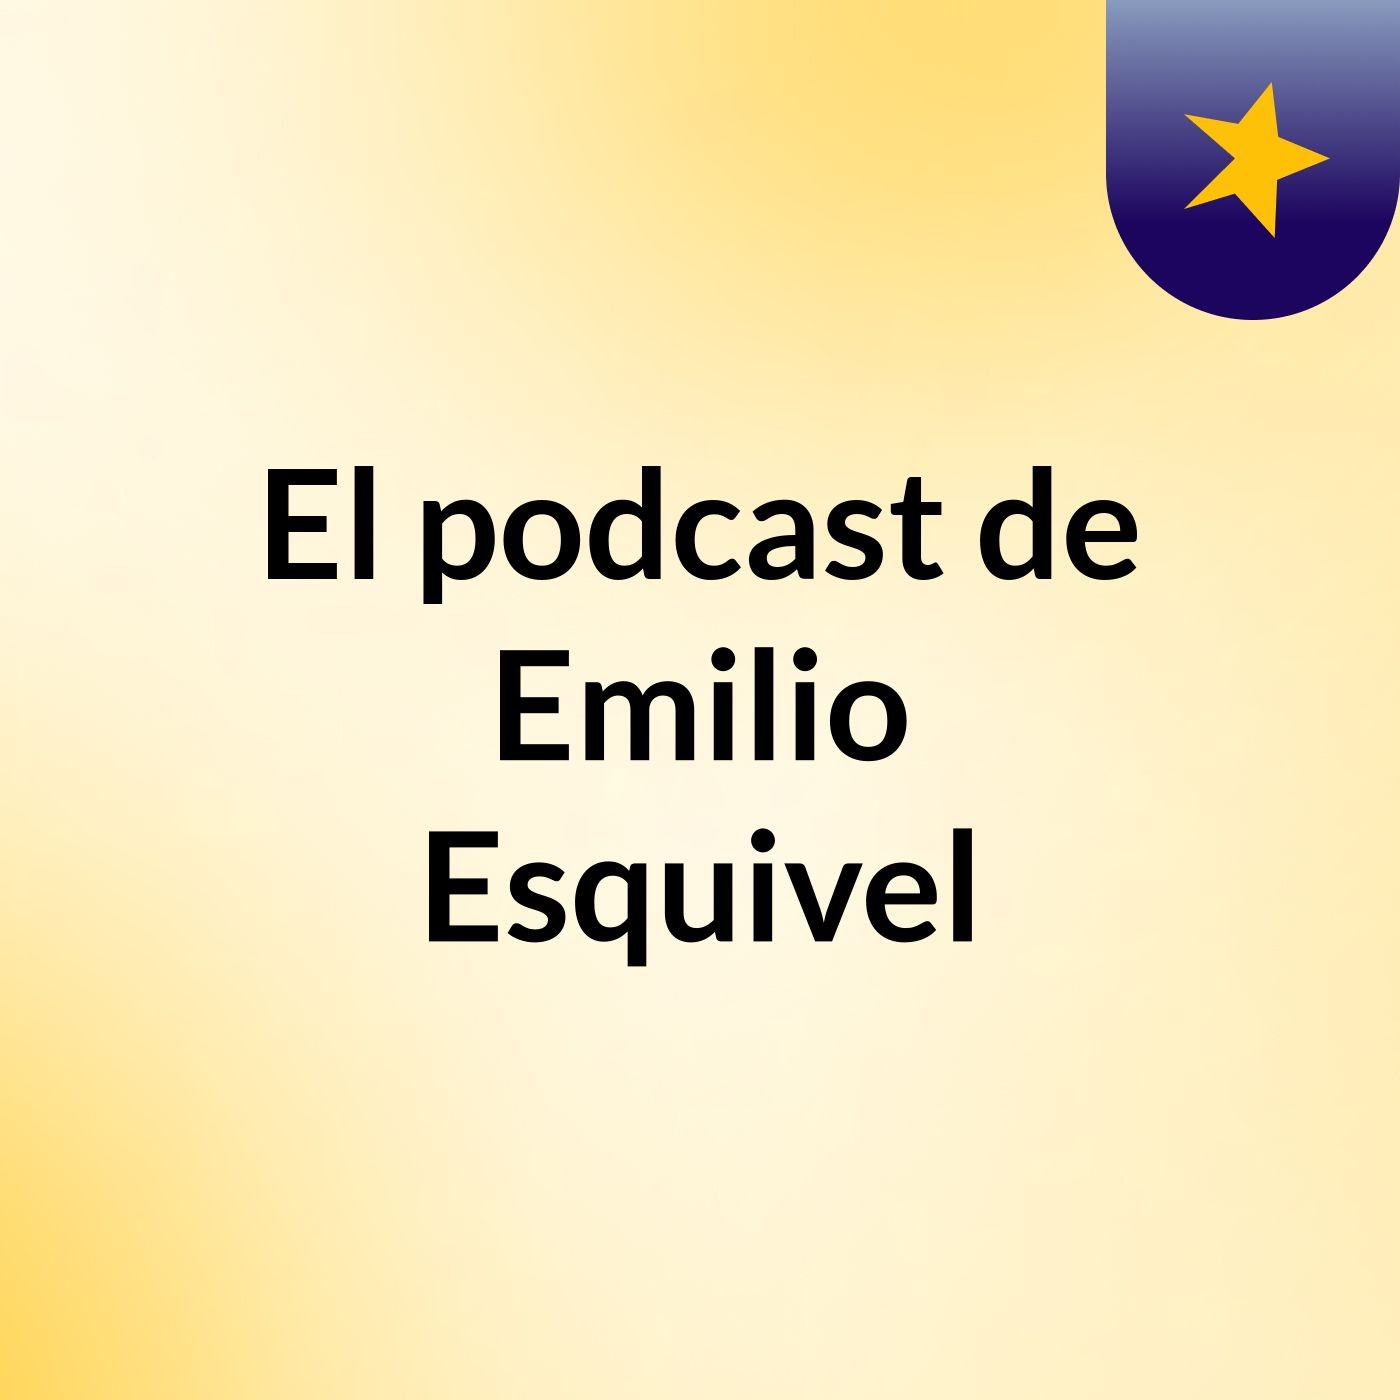 El podcast de Emilio Esquivel